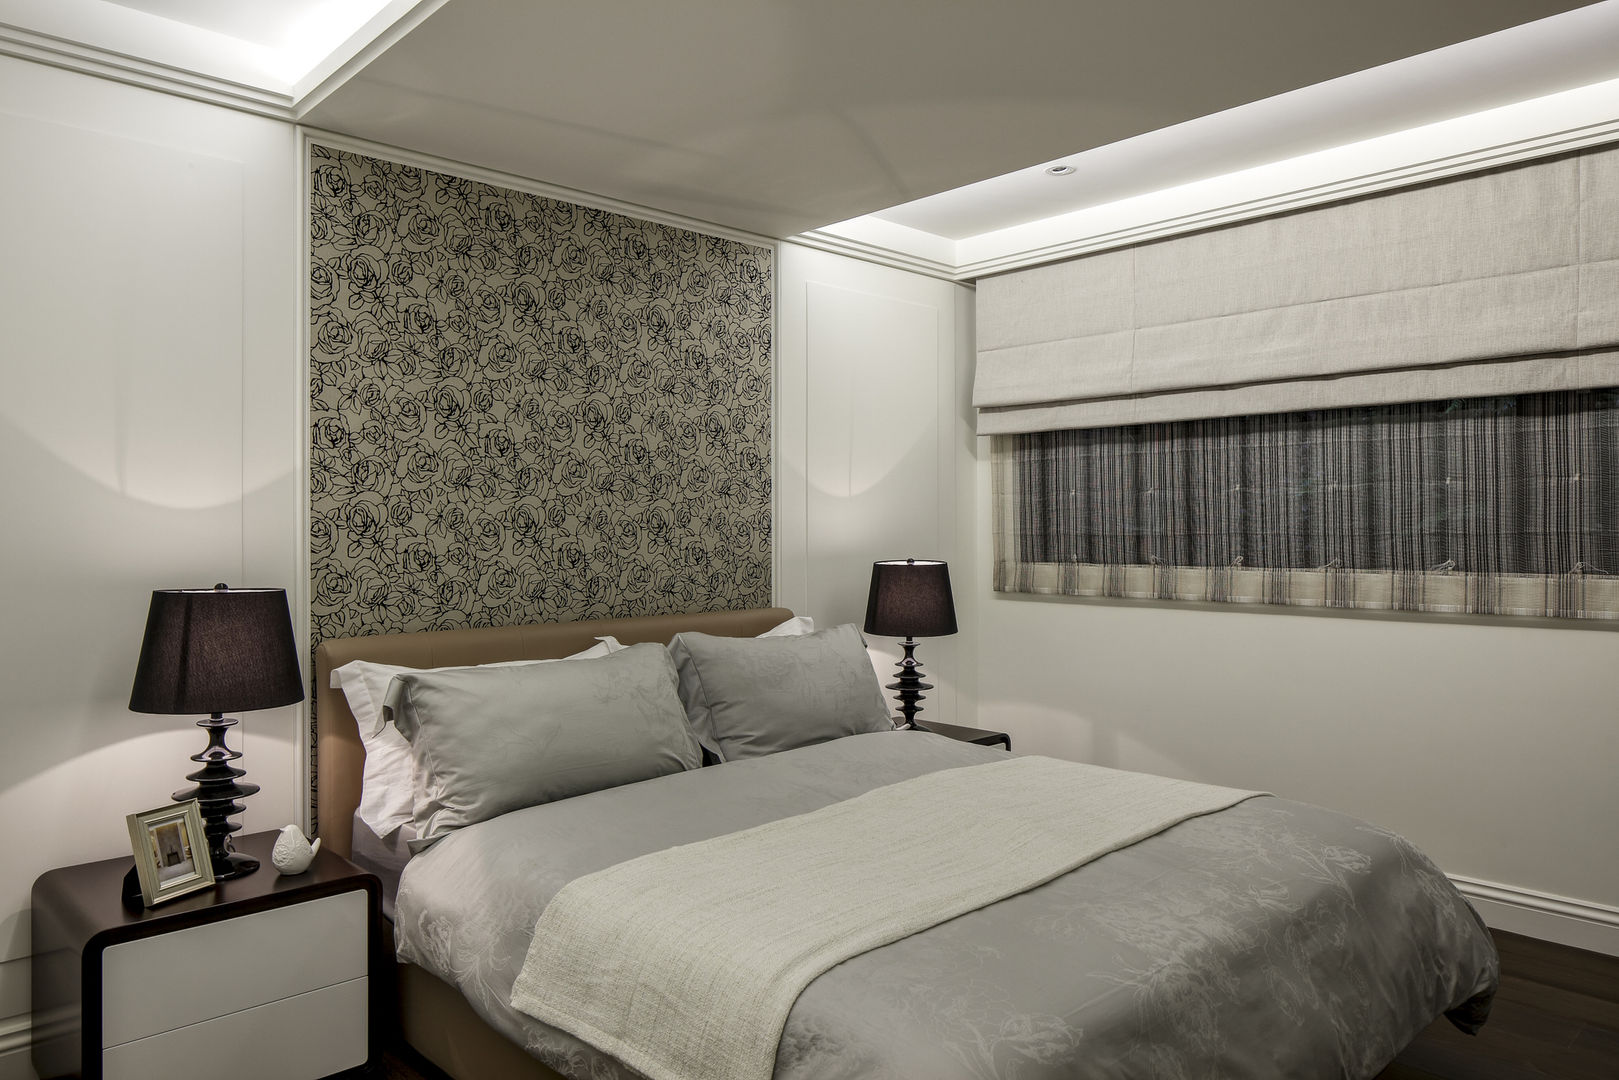 三代同堂度假別墅 大荷室內裝修設計工程有限公司 Modern style bedroom